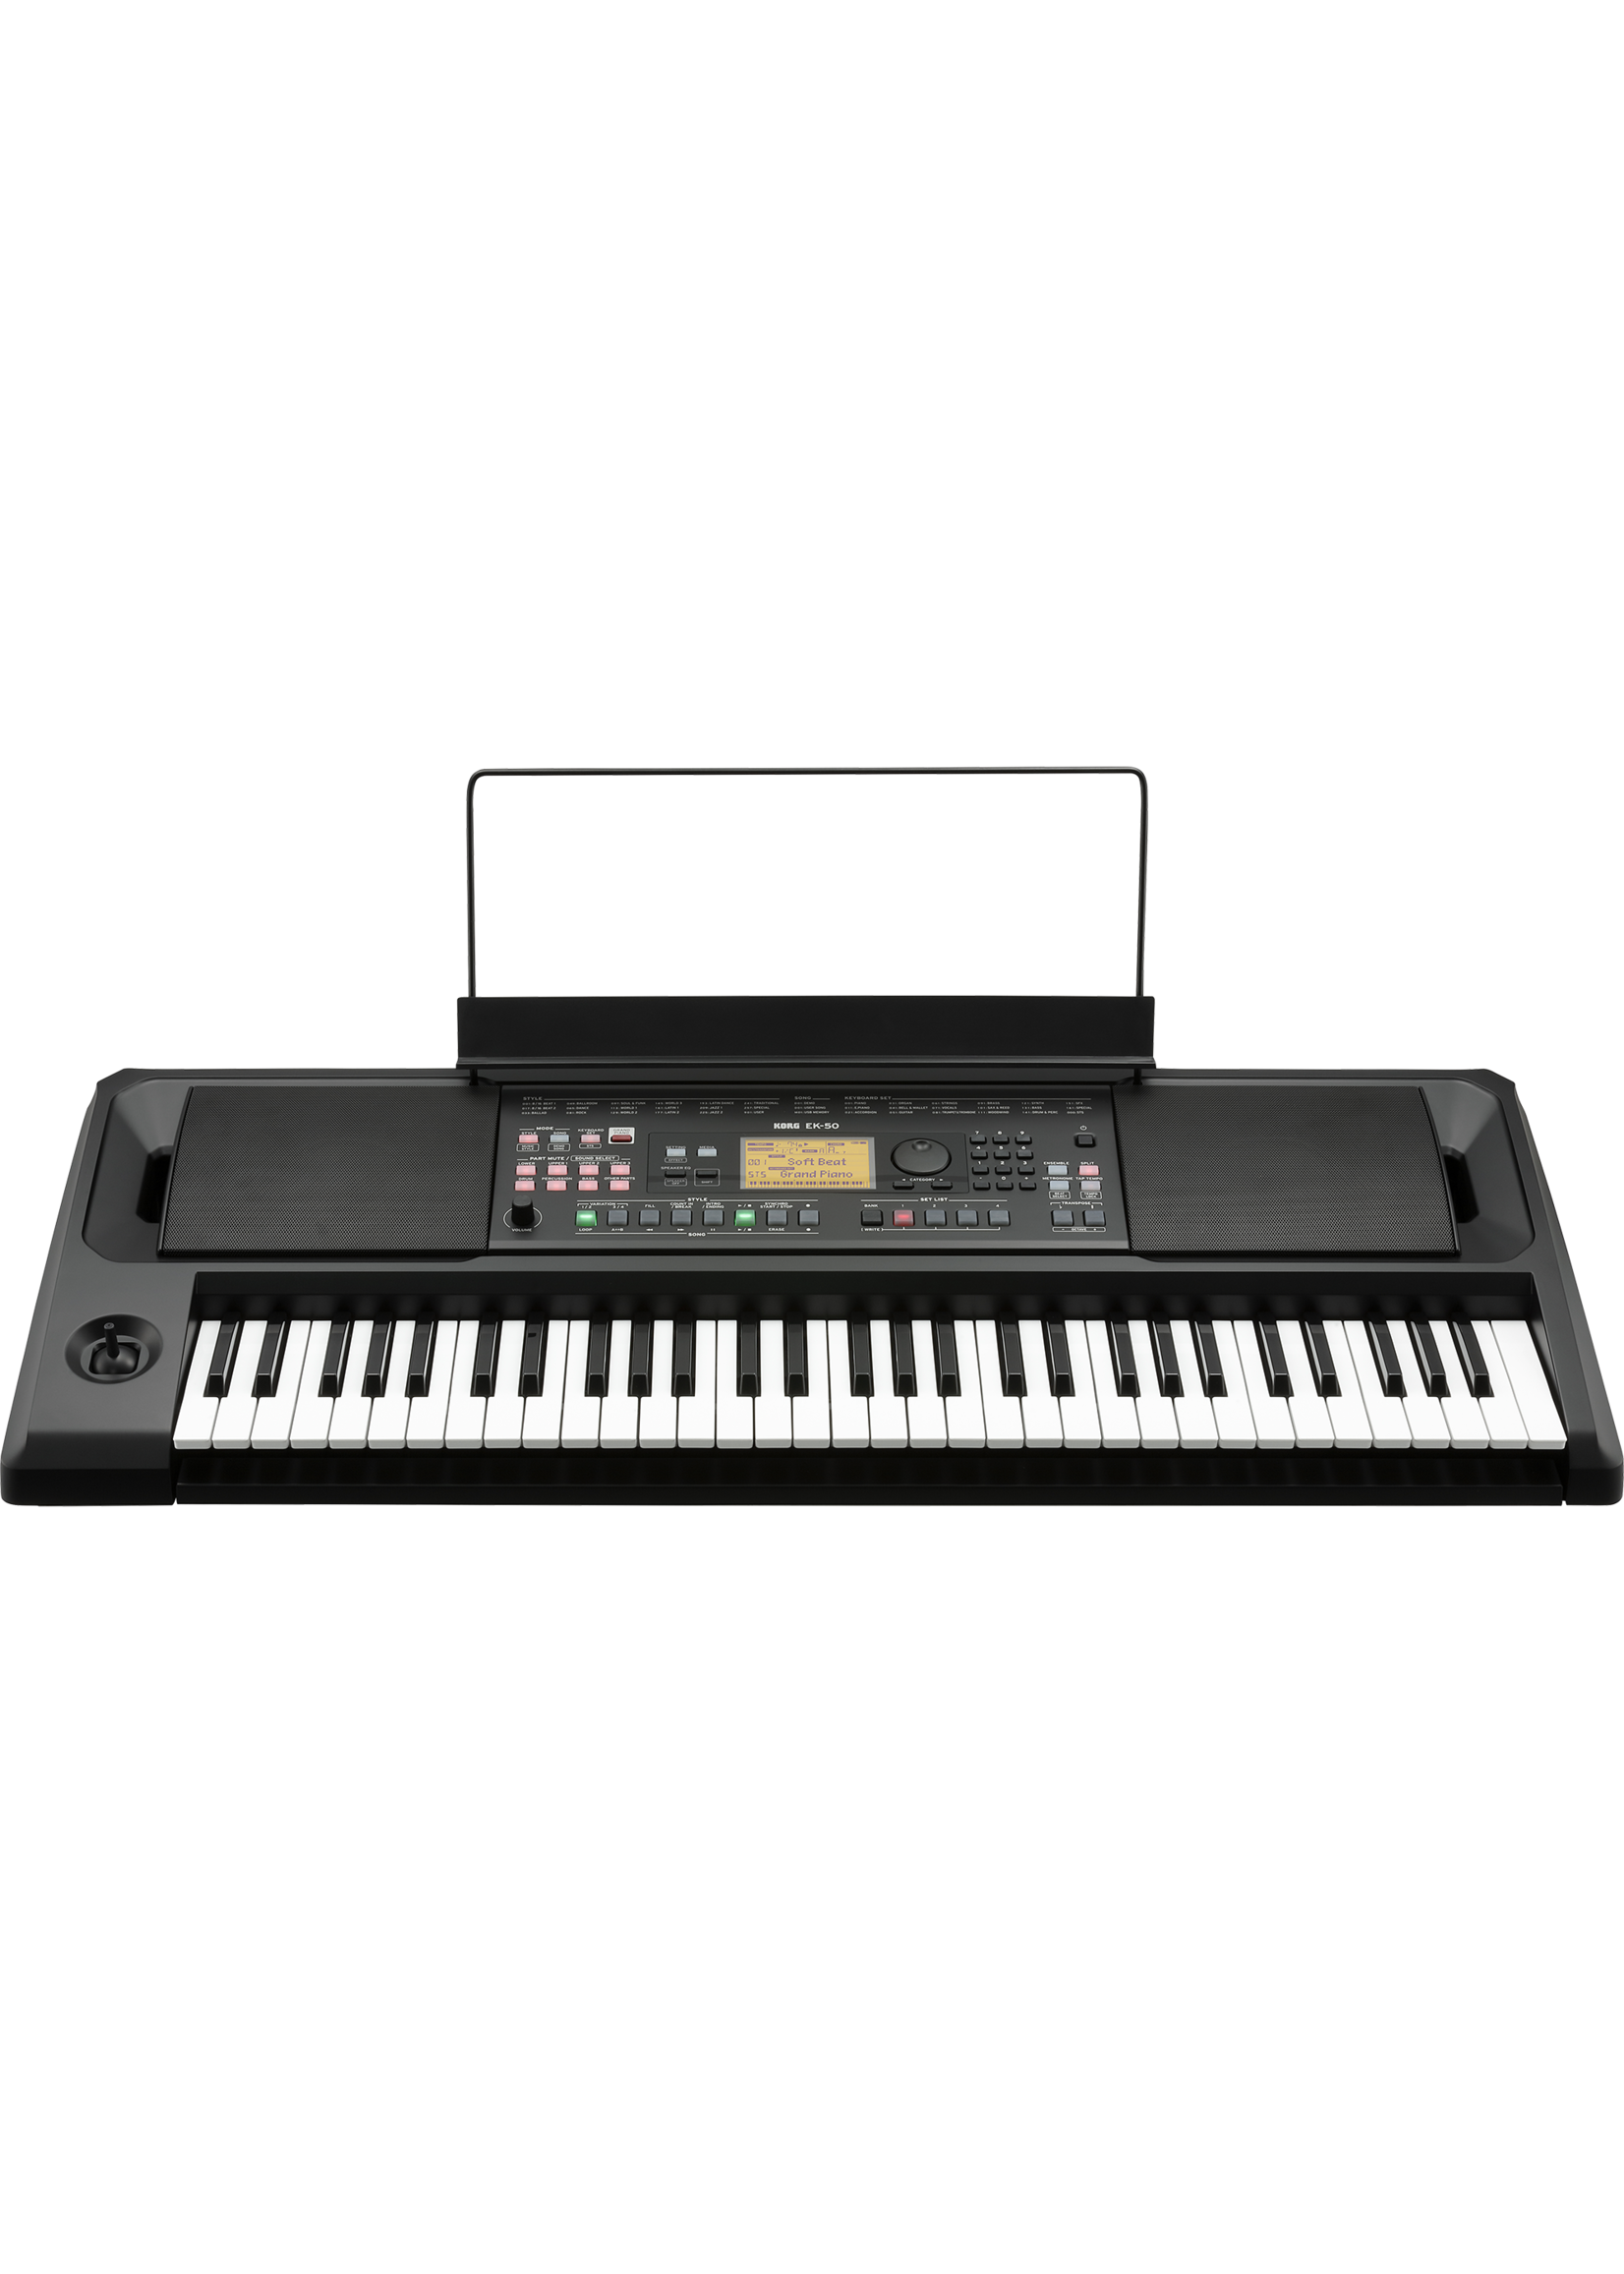 Korg Korg EK-50 61-key Arranger Keyboard